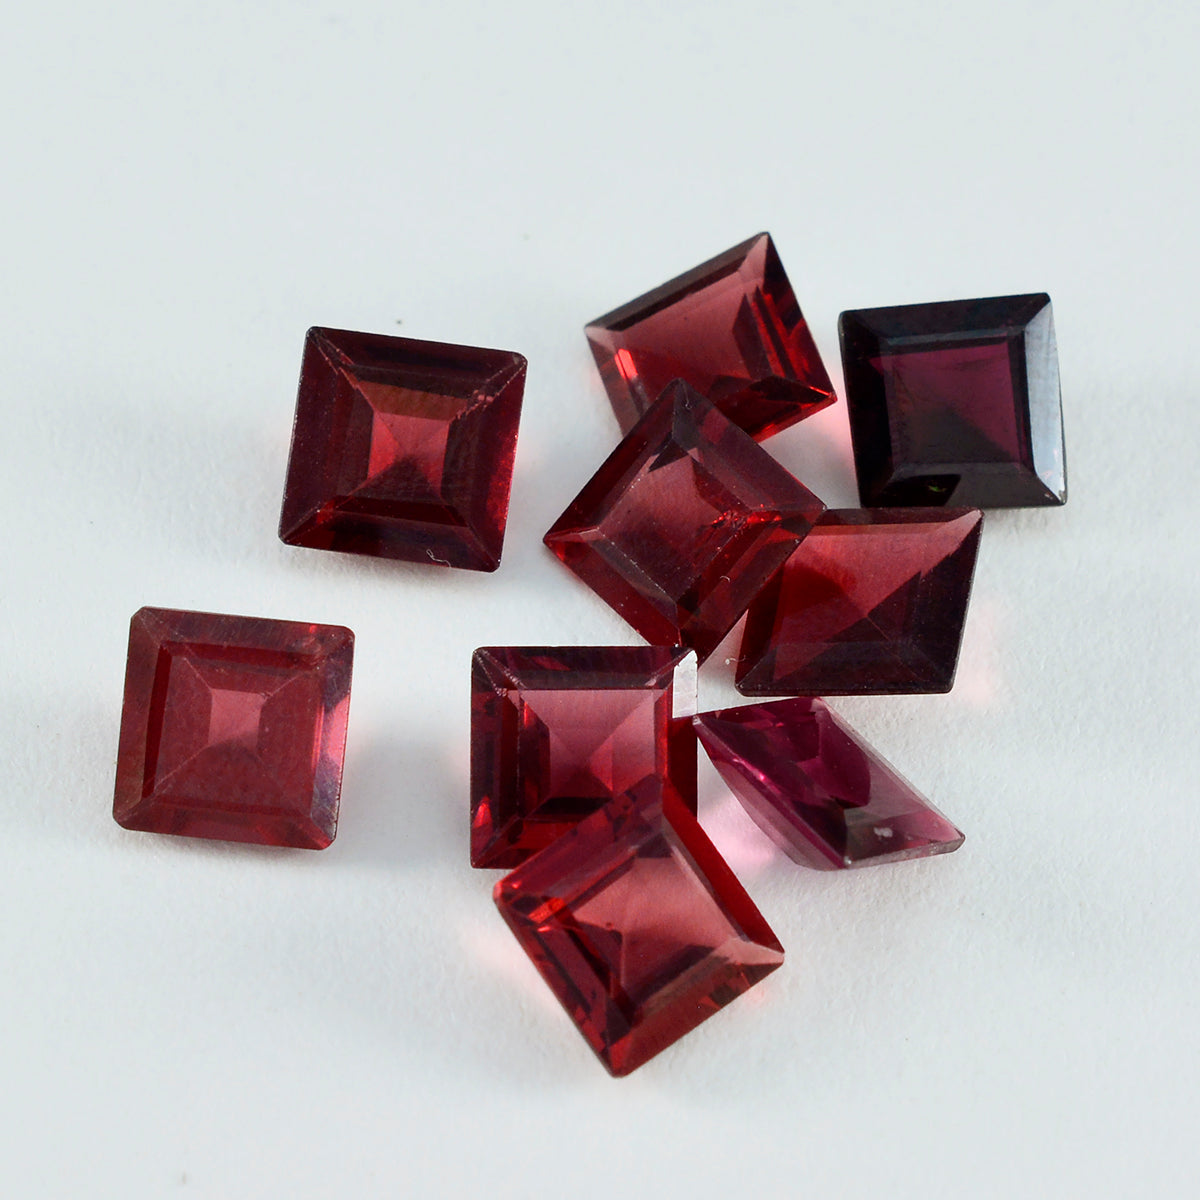 riyogems 1 шт. натуральный красный гранат ограненный 9x9 мм квадратной формы красивый качественный свободный драгоценный камень